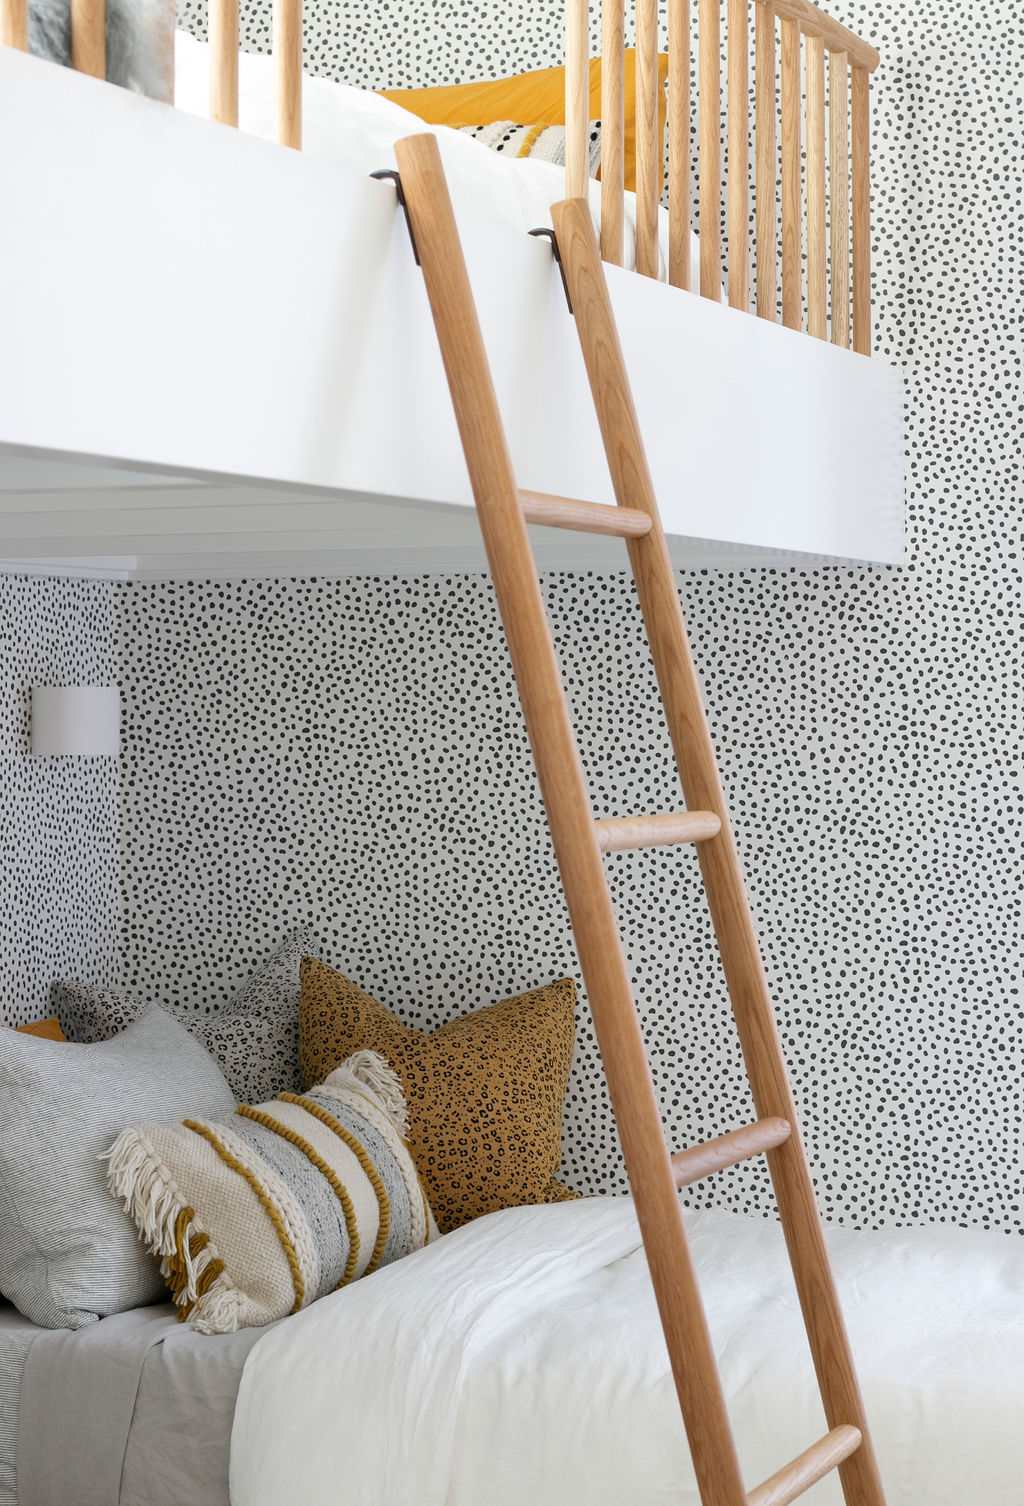 Dalmatian print wallpaper bunk bed room